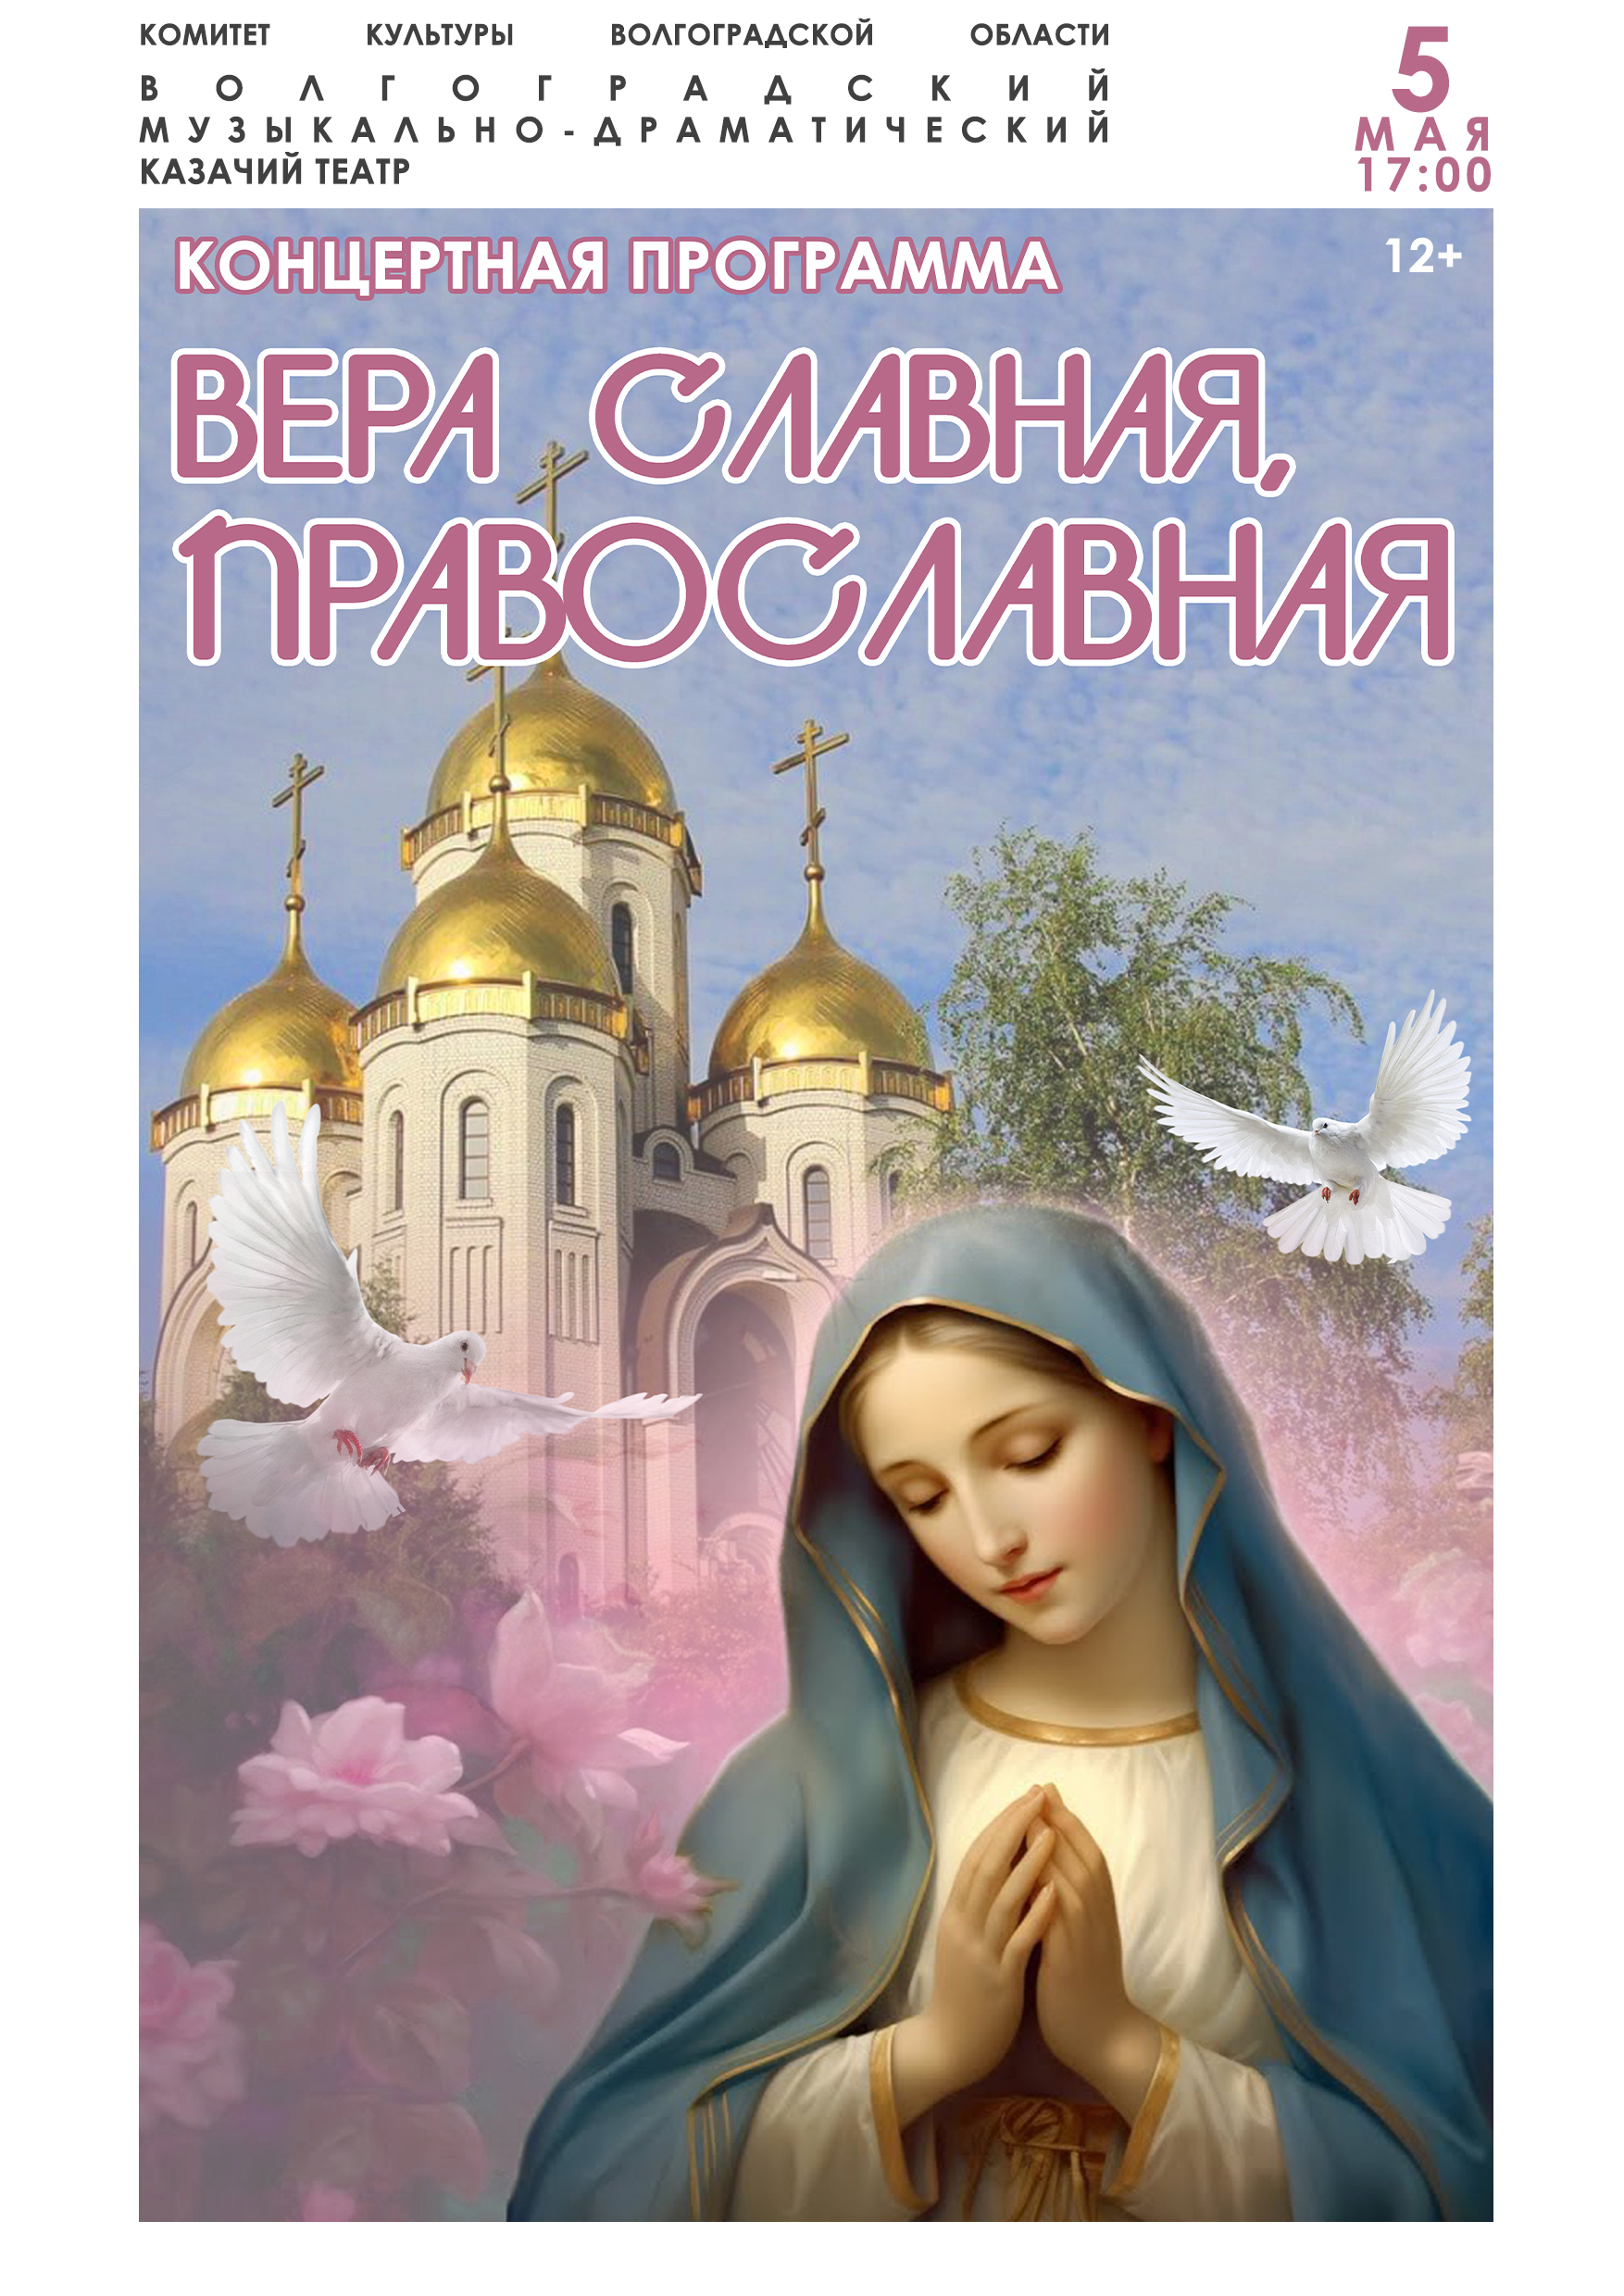 Концертная программа "Вера славная, православная"